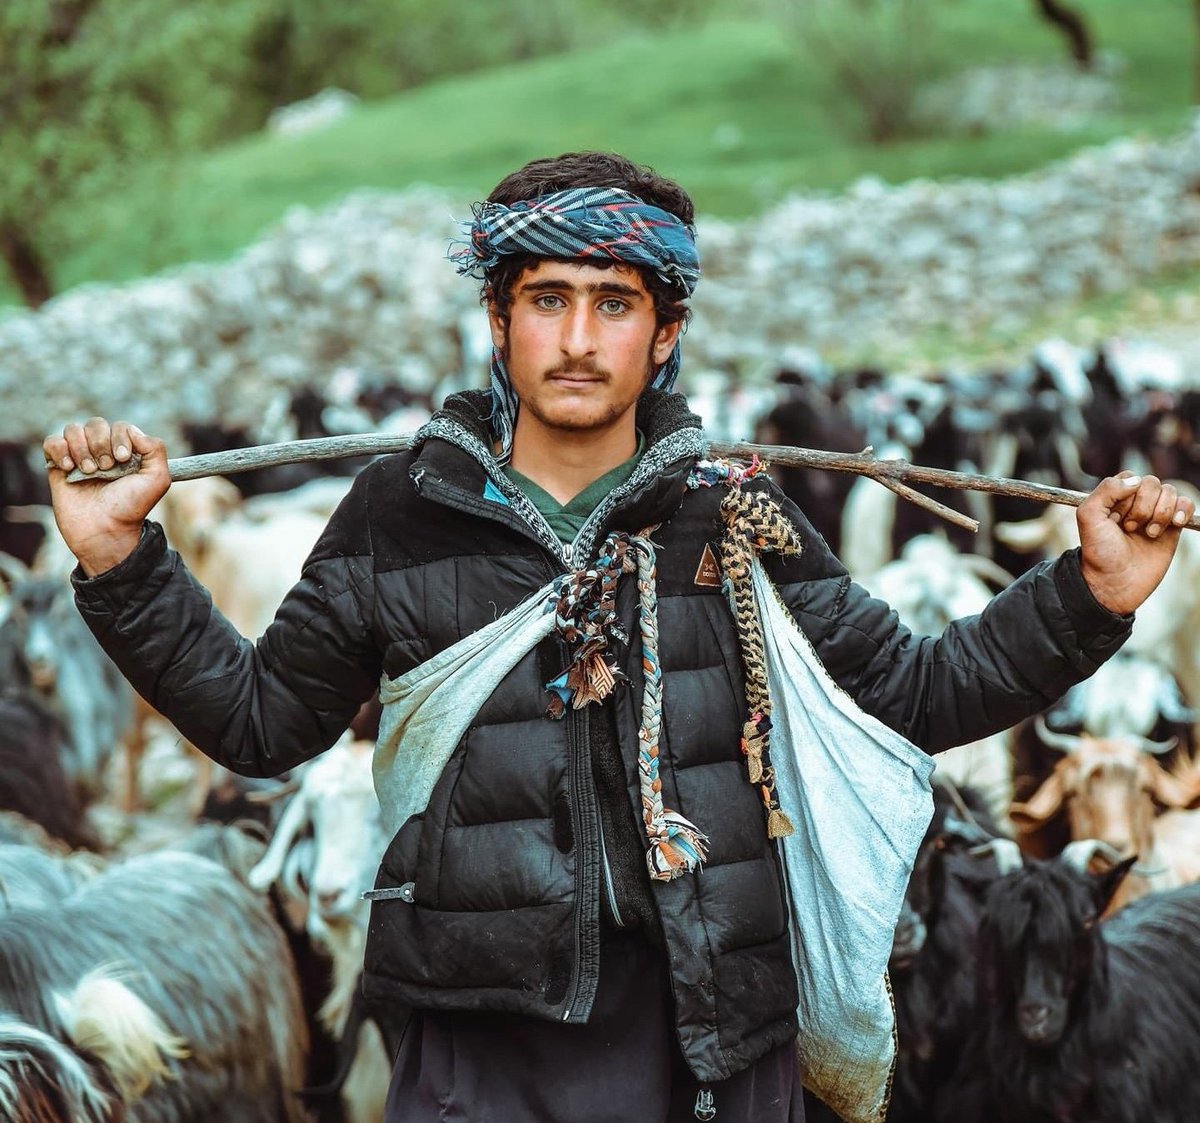 Portrait of a Kurdish shepherd.
📷: Muhamad Mrad Akoyi| IG